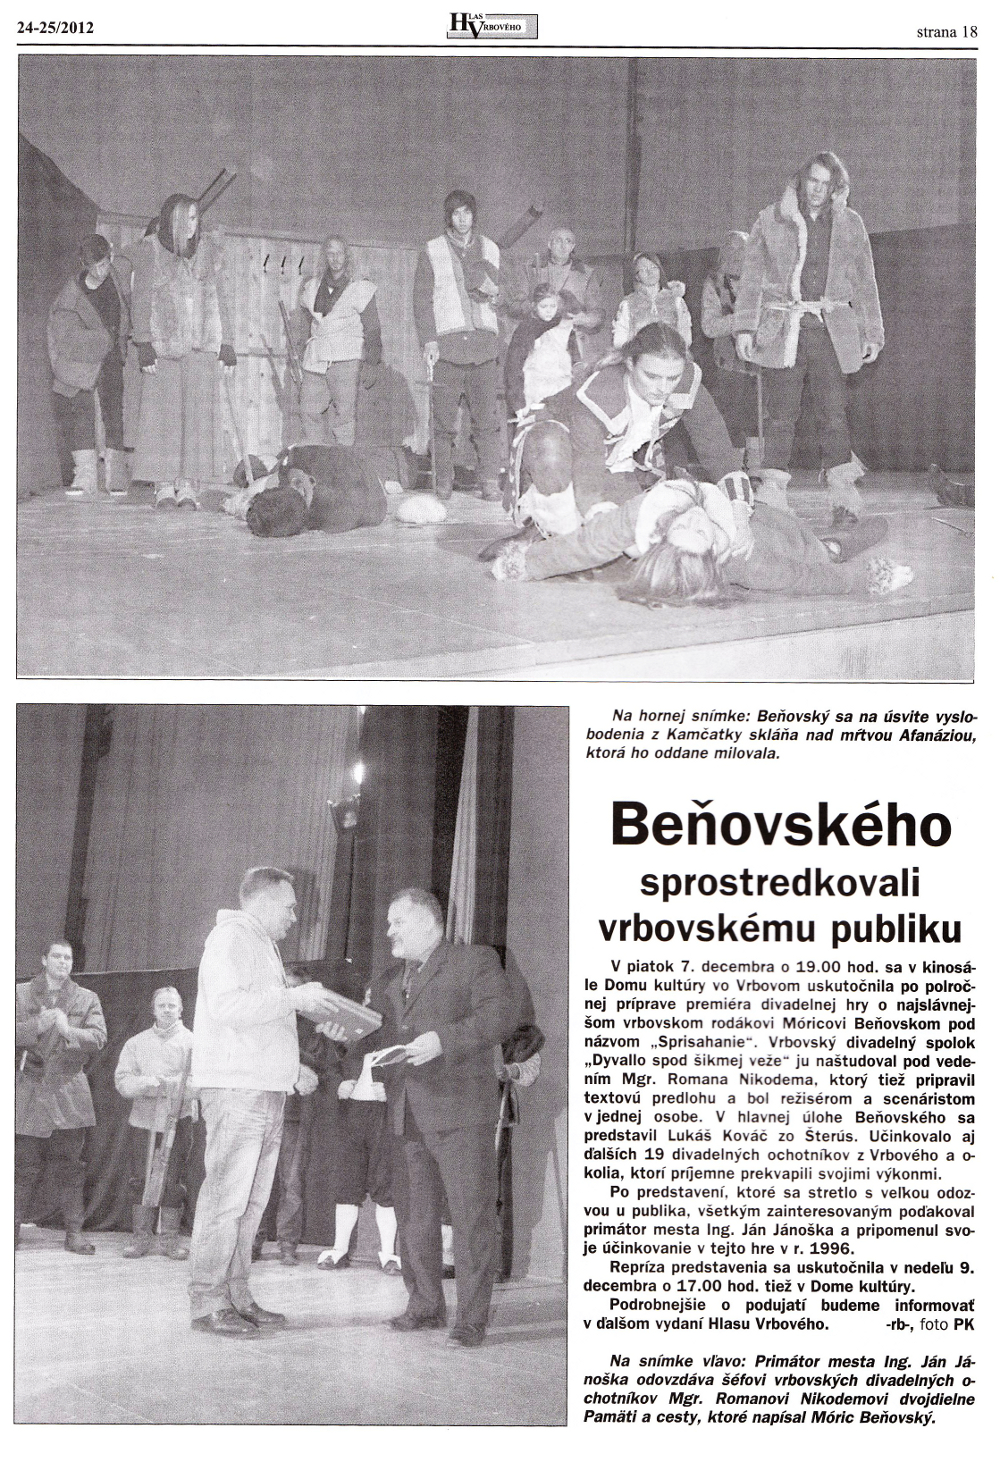 Hlas Vrbového 24/2012, strana 18